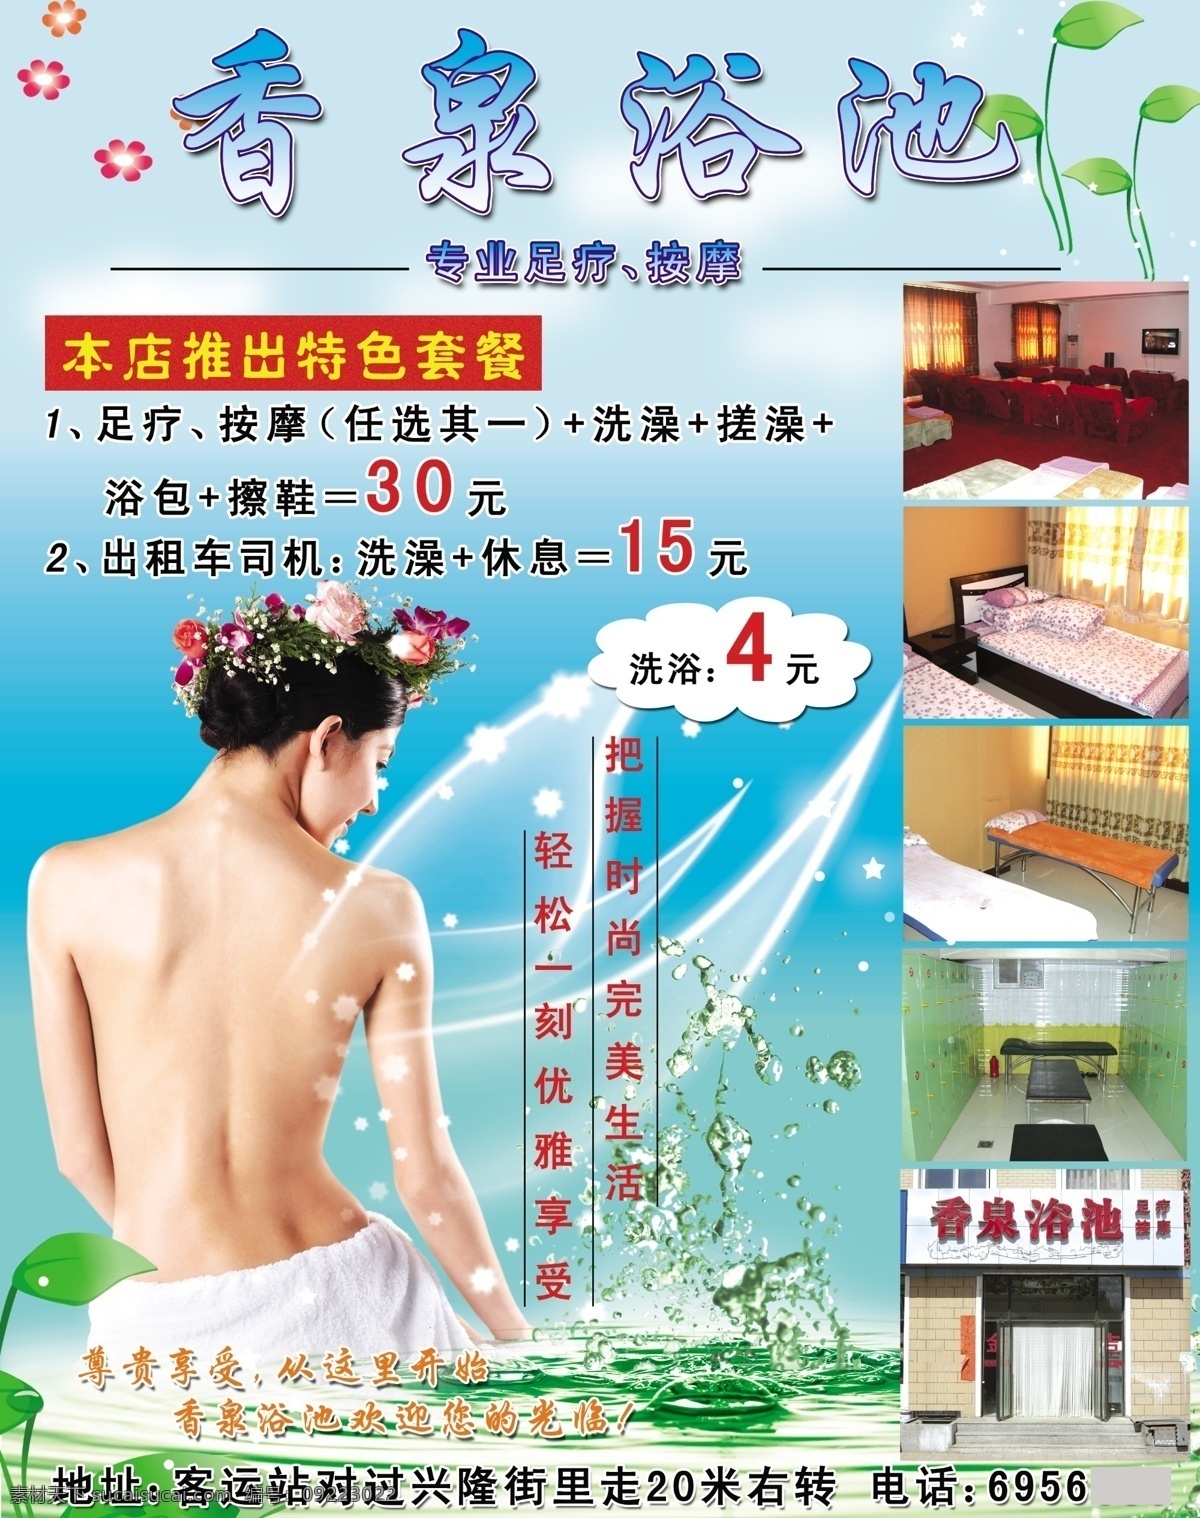 浴池 足浴 背景 海报 养生 水花 广告设计模板 源文件